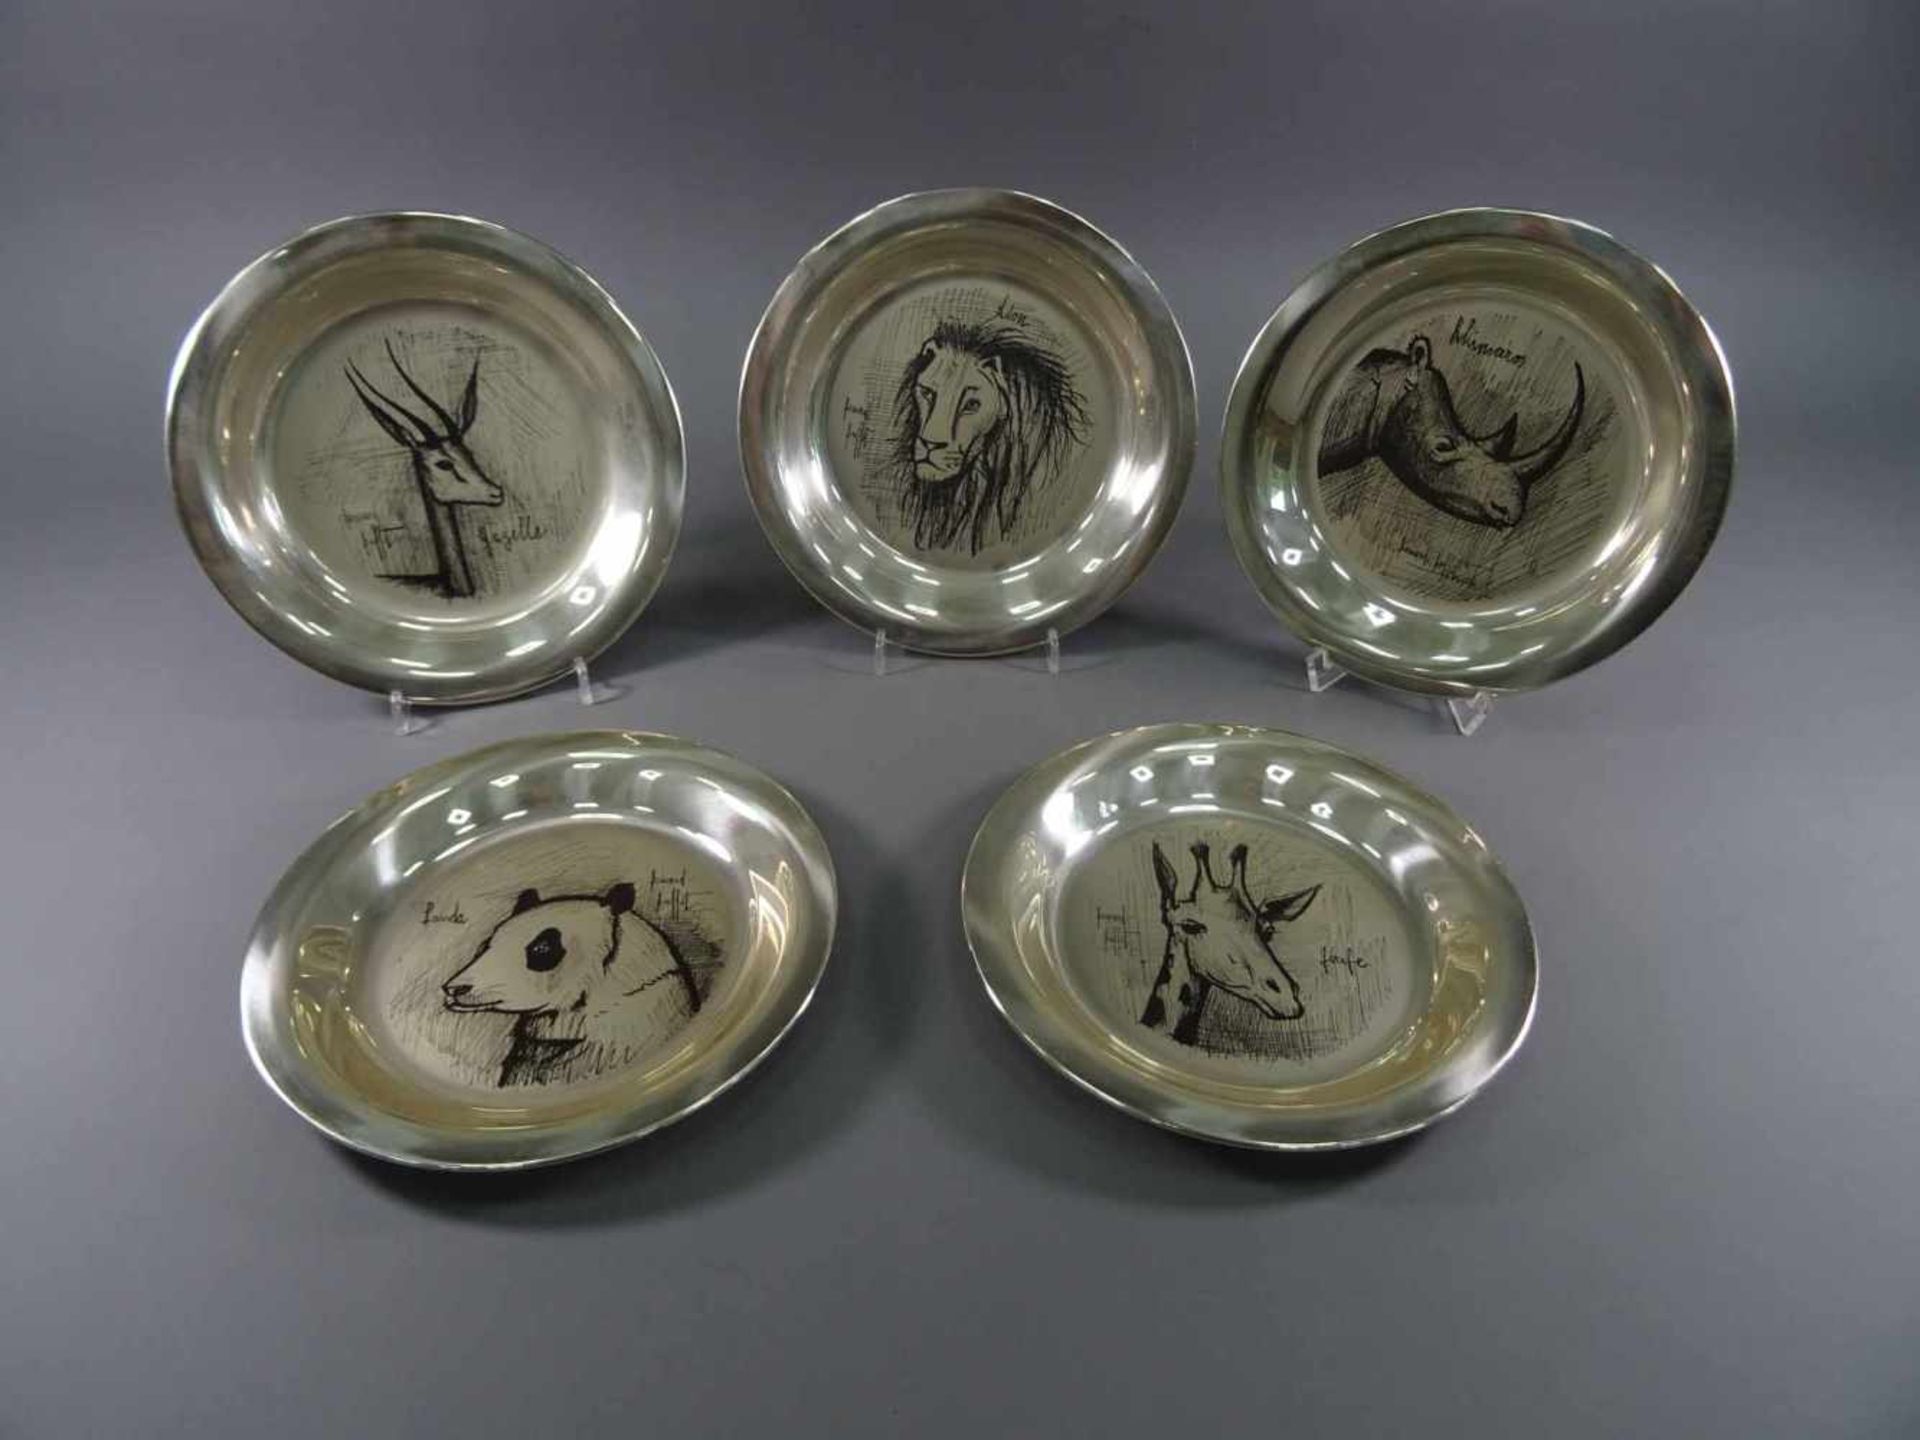 Fünf Teller, 925 Silber, Frankreichmit Gravurdekor von Bernard Buffet, Paris 1928 - 1999